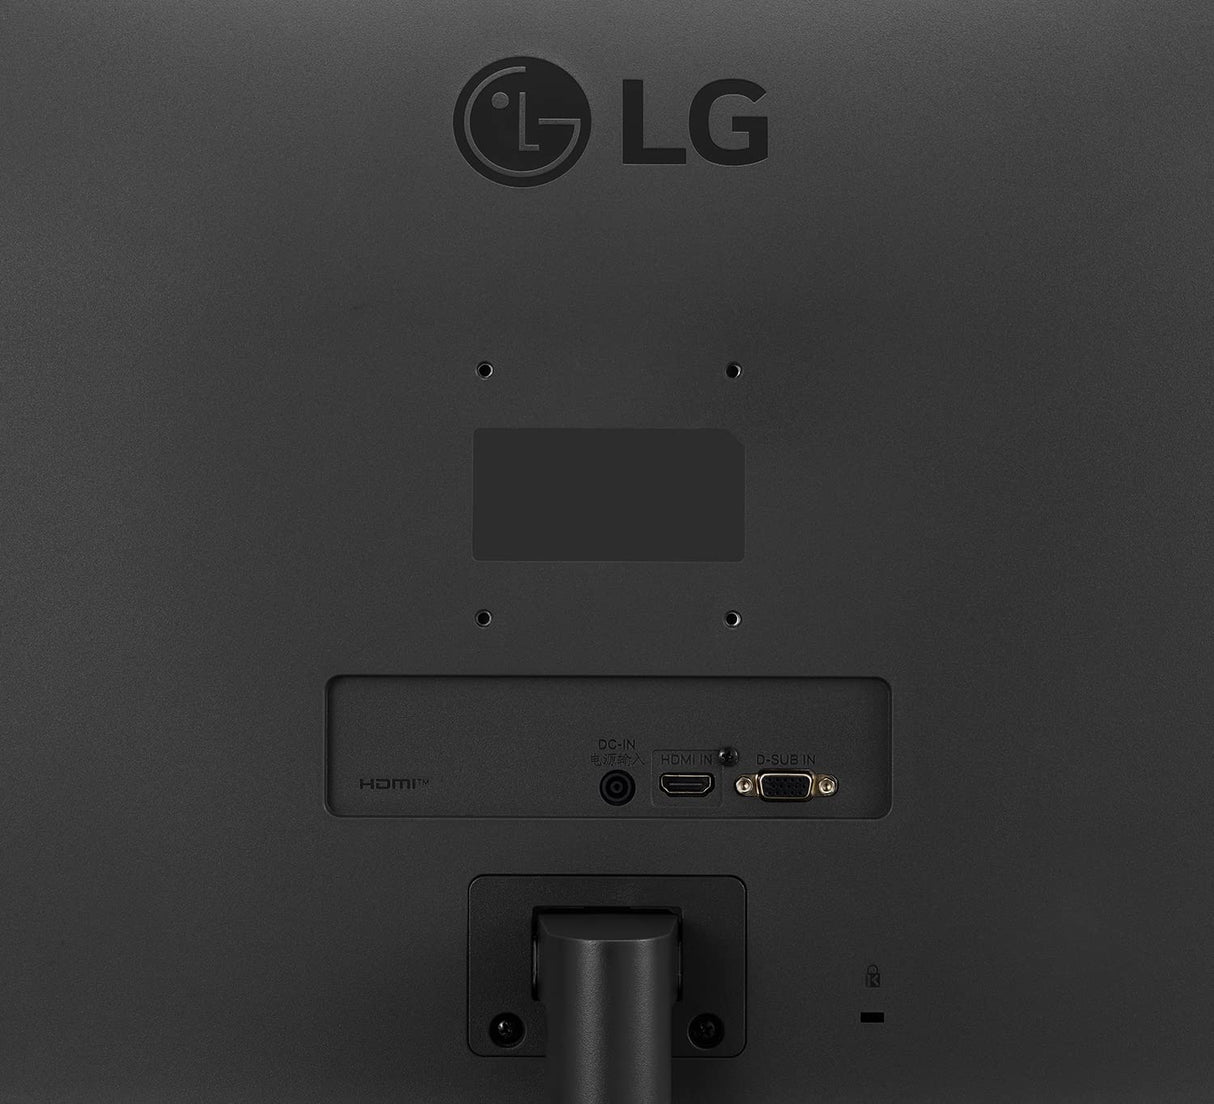 Monitor  LG 32MN500M-B, 31.5 Full-HD, 5 ms, 75 Hz, 2 x HDMI